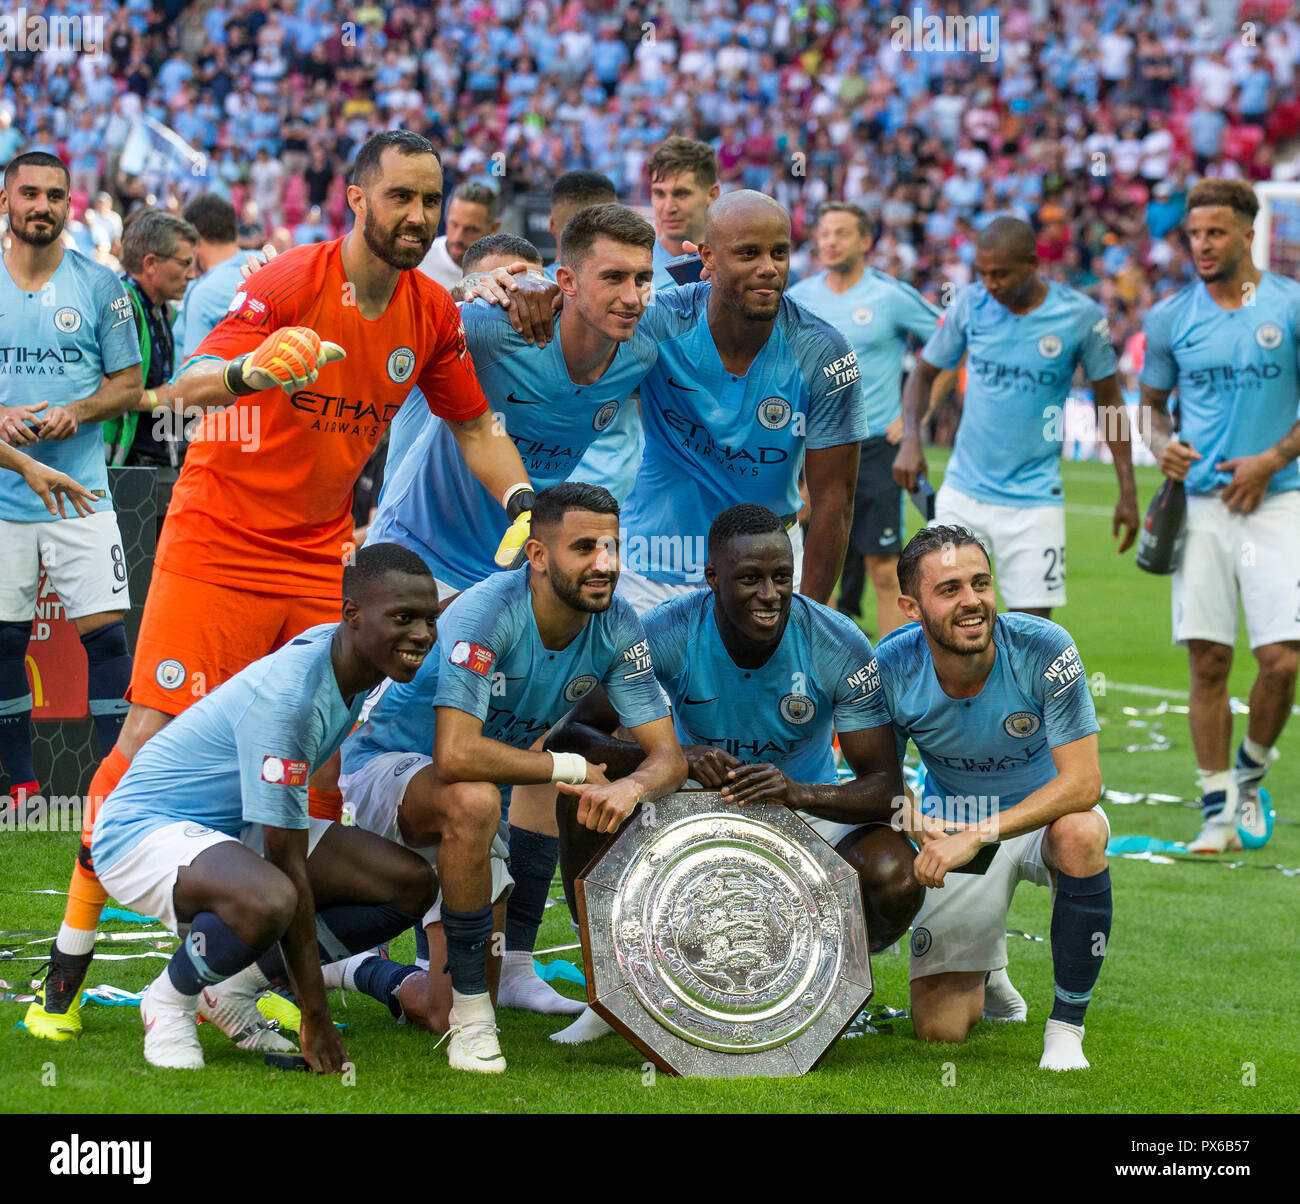 El Manchester City jugadores posan con la Community Shield durante la FA Community Shield partido final entre el Chelsea y el Manchester City en Stamford Bridge, Foto de stock